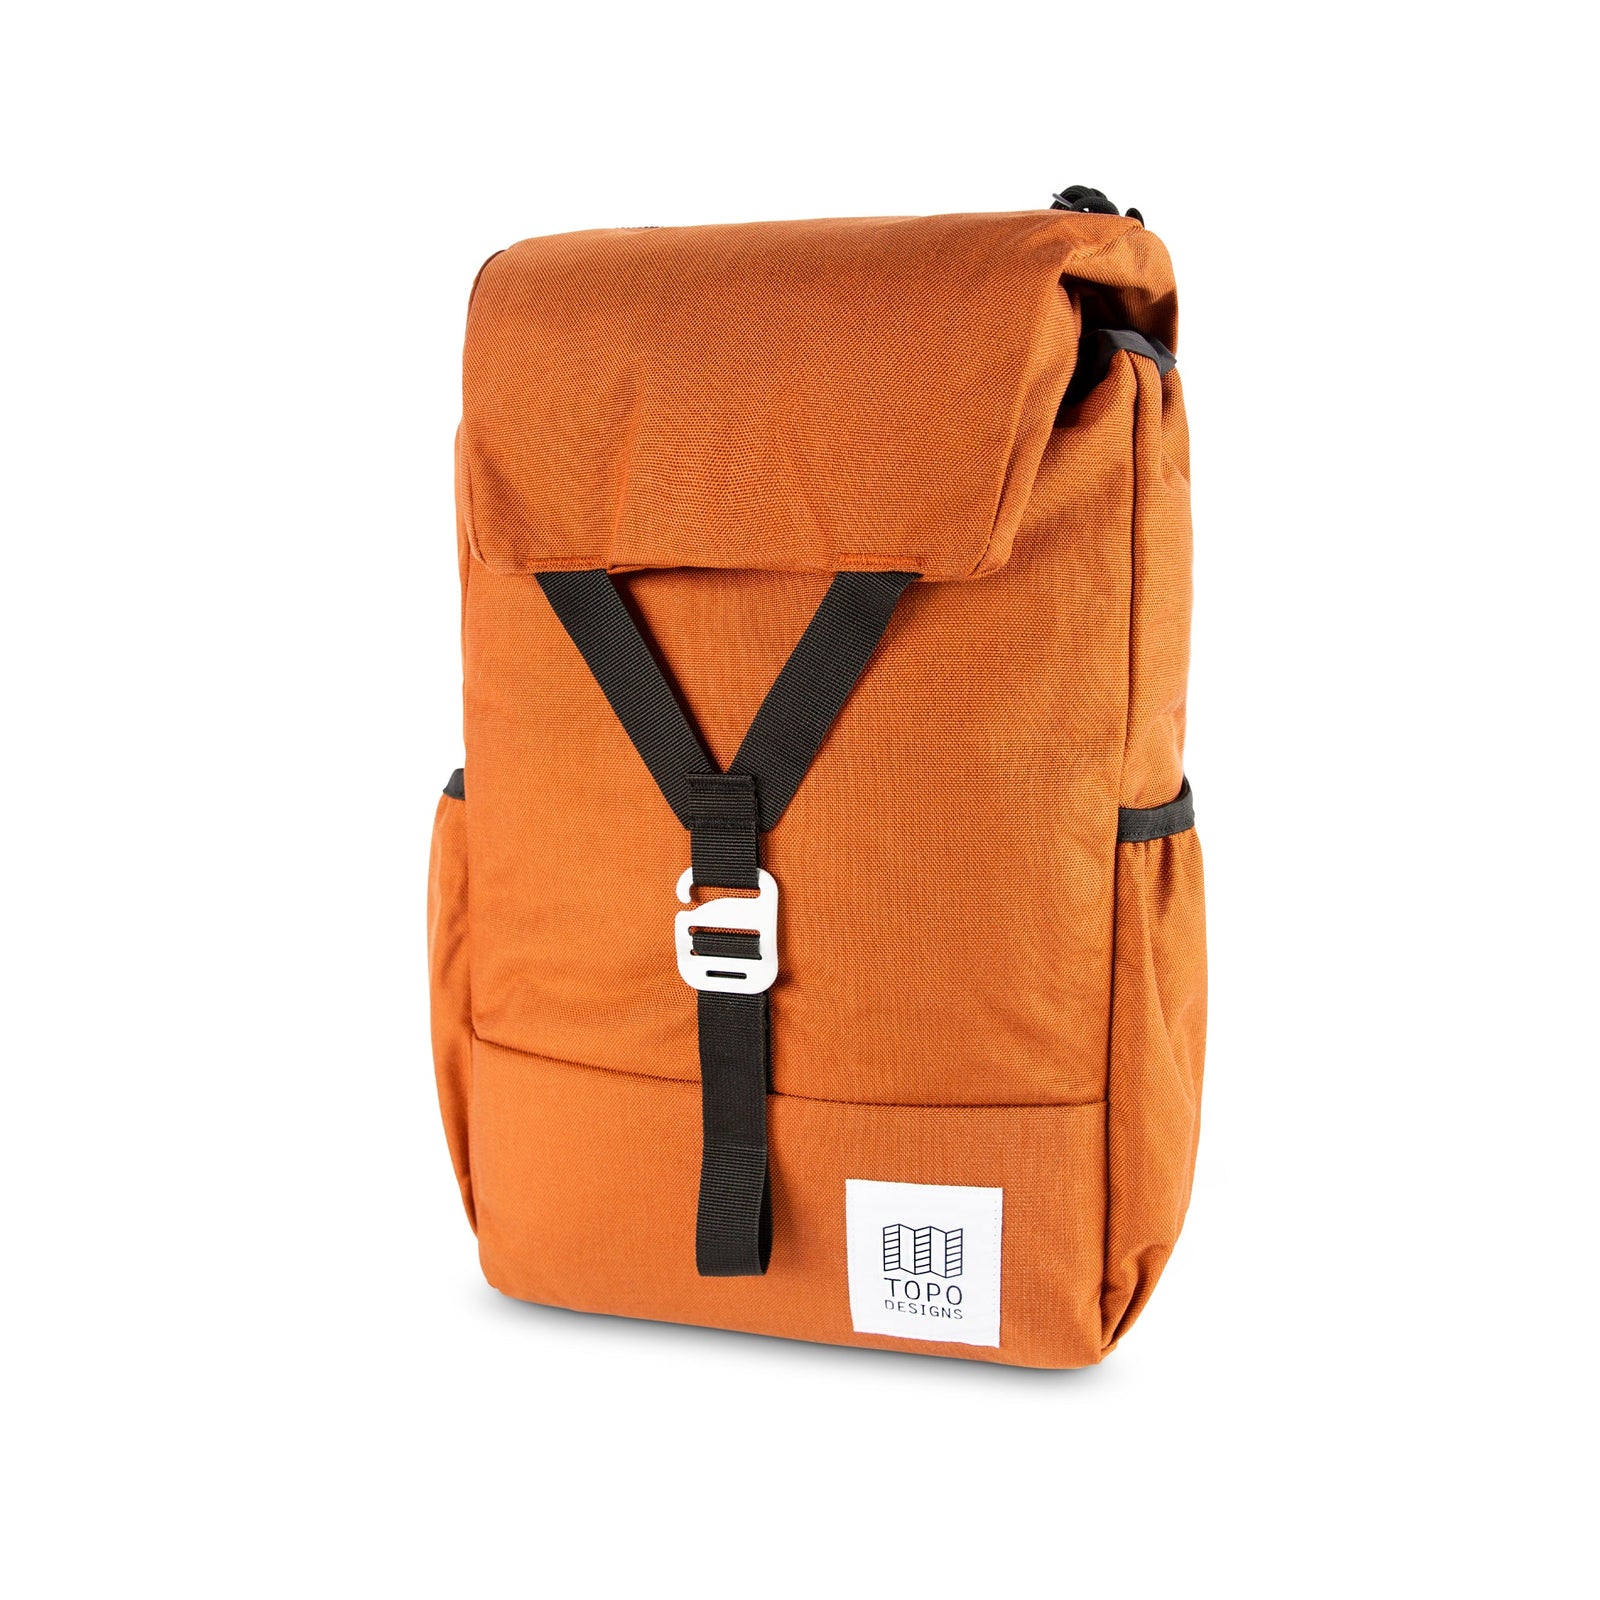 Topo Designs Y-Pack rucksack backpack in "Clay" orange.